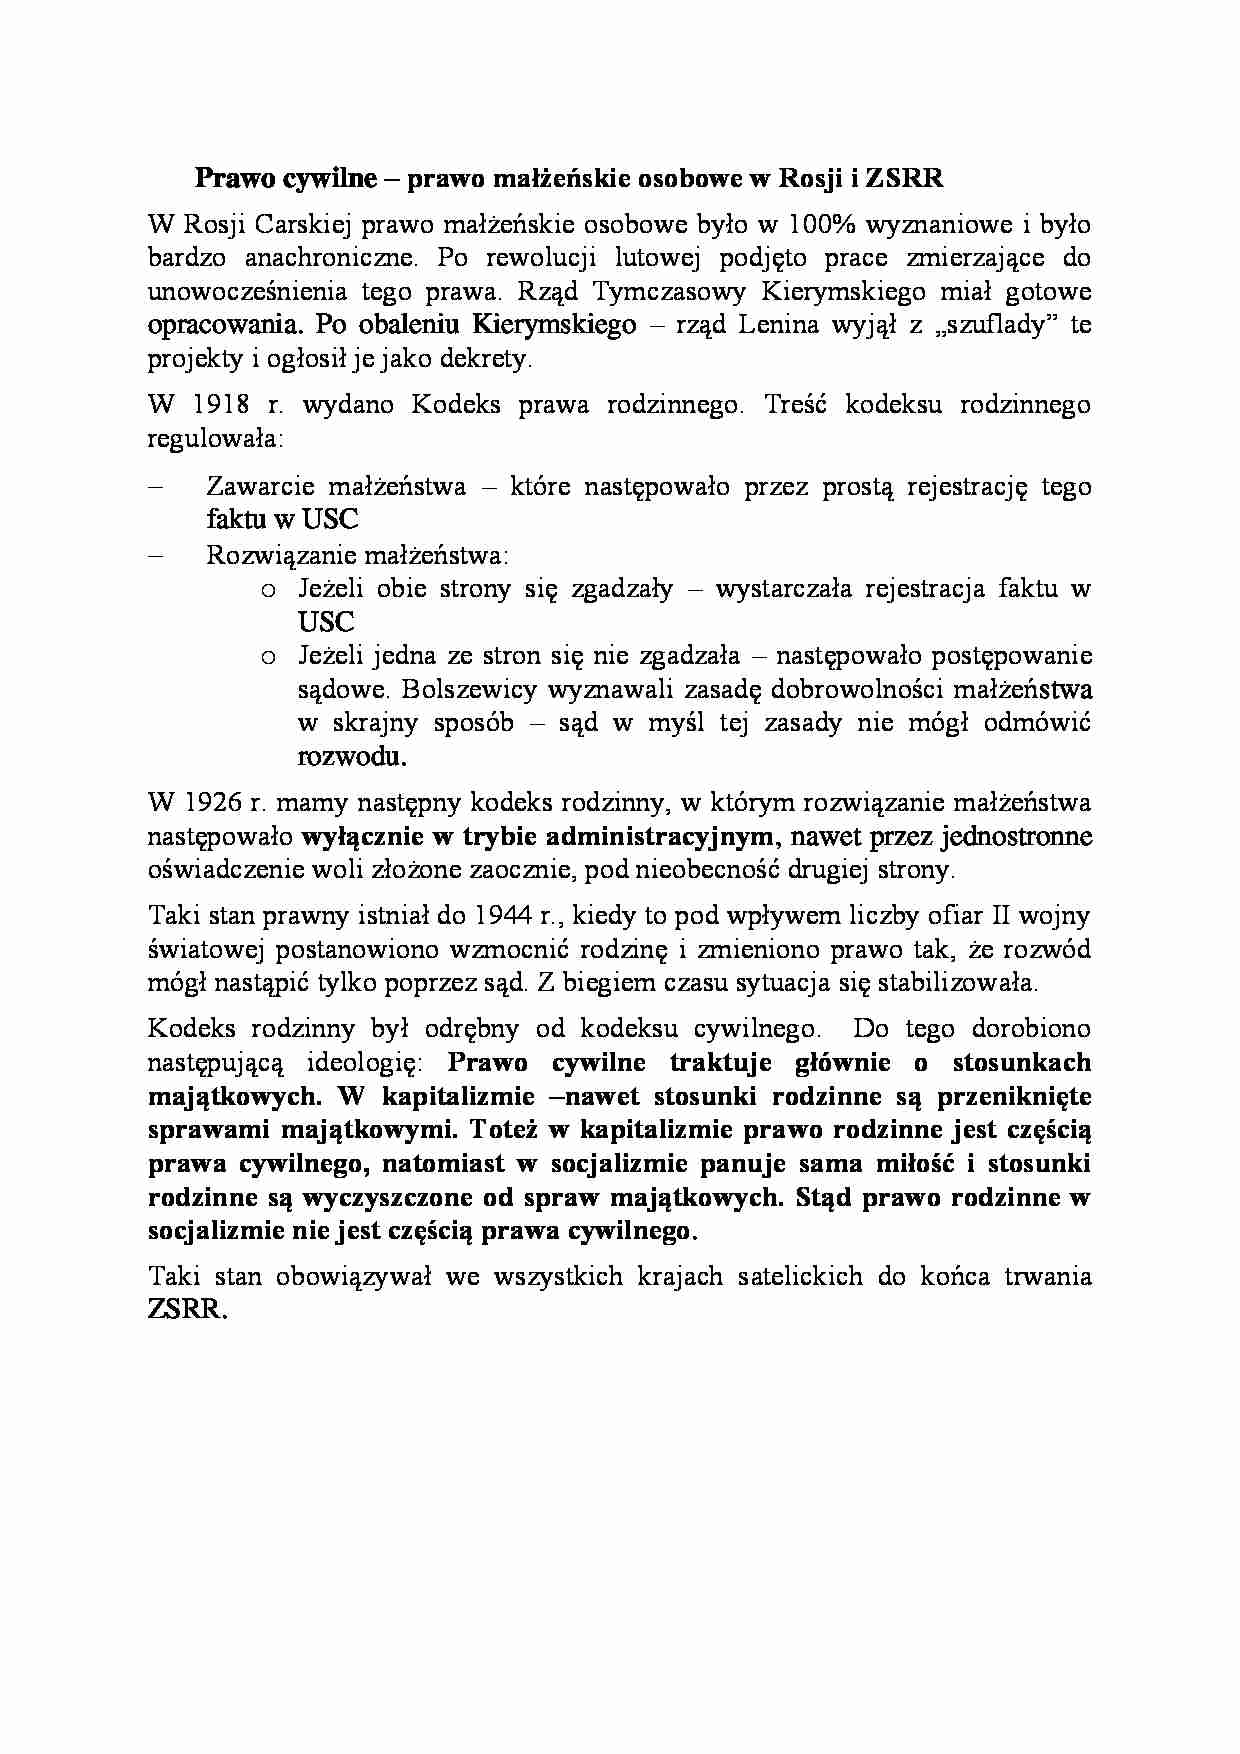 Prawo cywilne - prawo małżeńskie osobowe w Rosji i ZSRR - strona 1